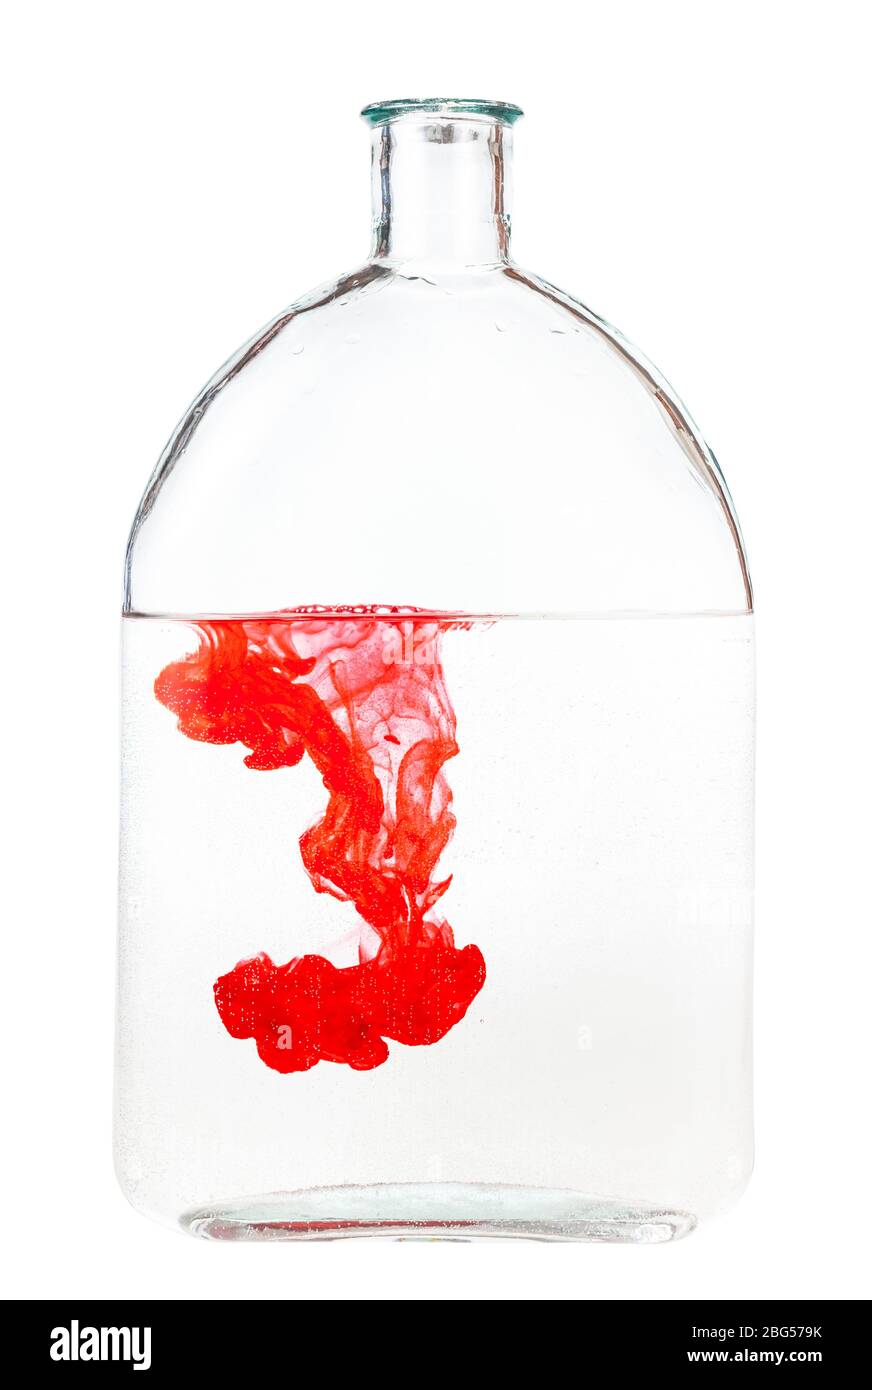 l'inchiostro rosso si dissolve in acqua in un pallone di vetro isolato su fondo bianco Foto Stock